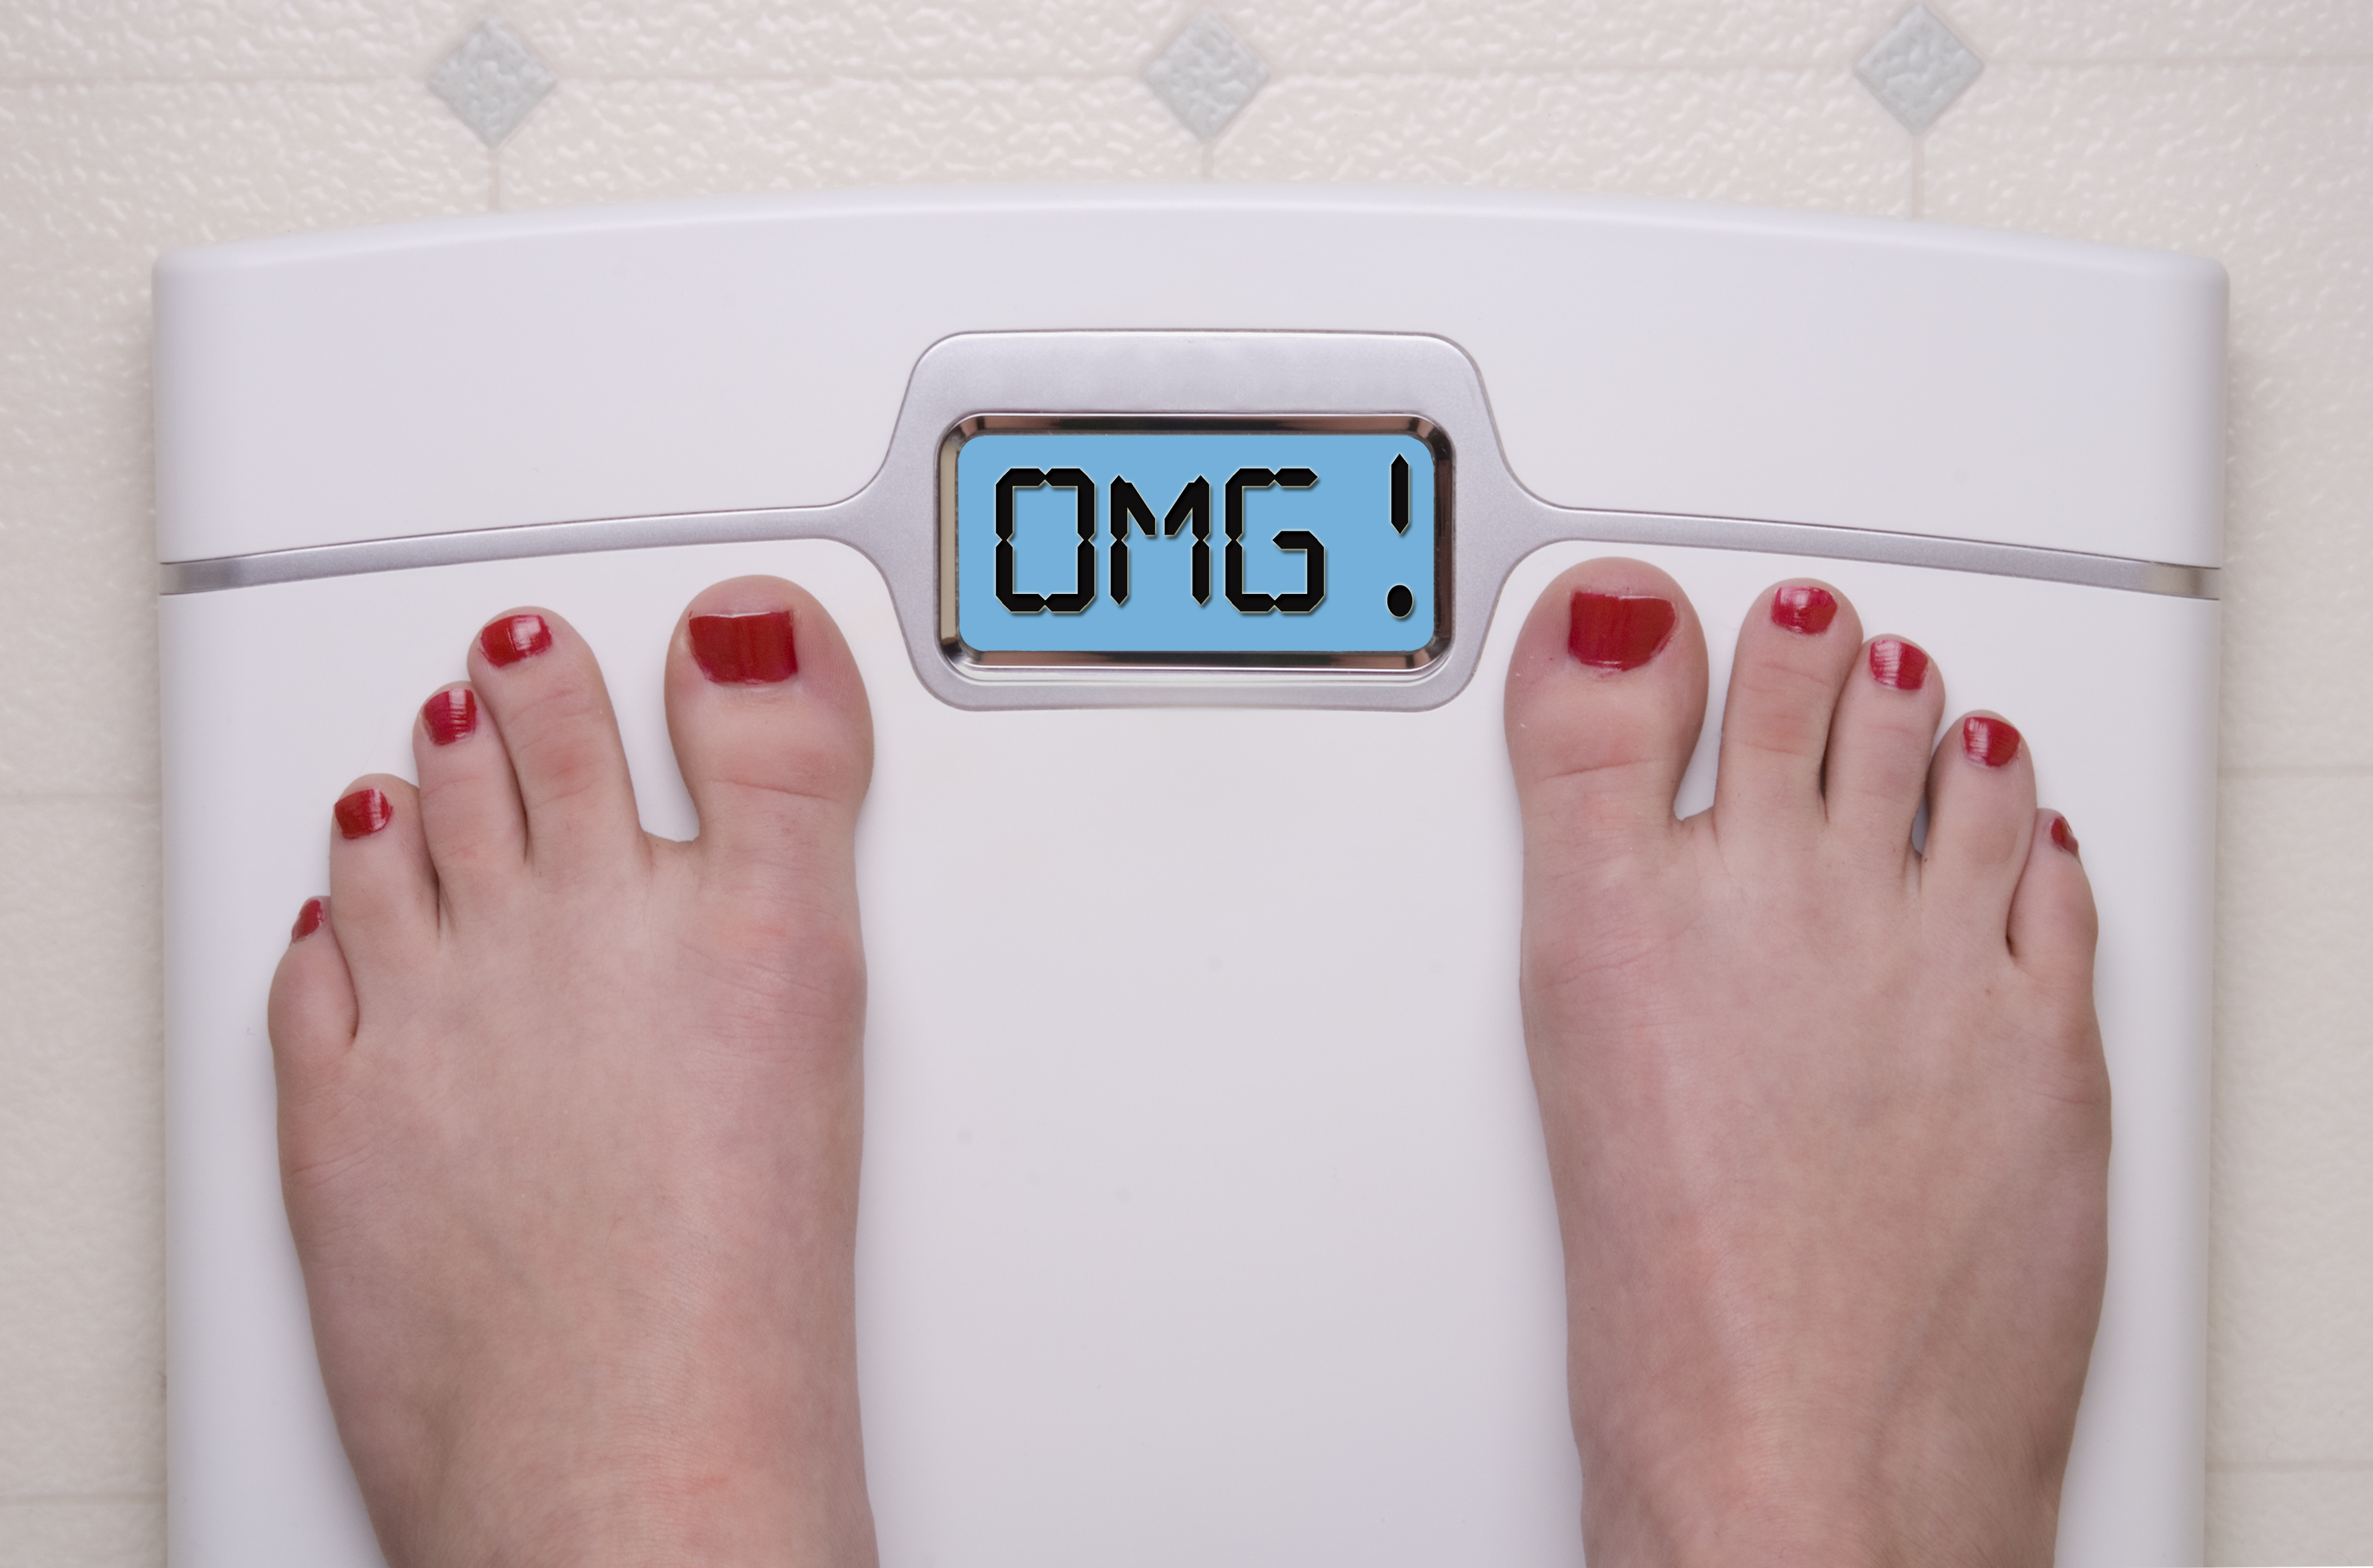 вес тела увеличивается во время голодания